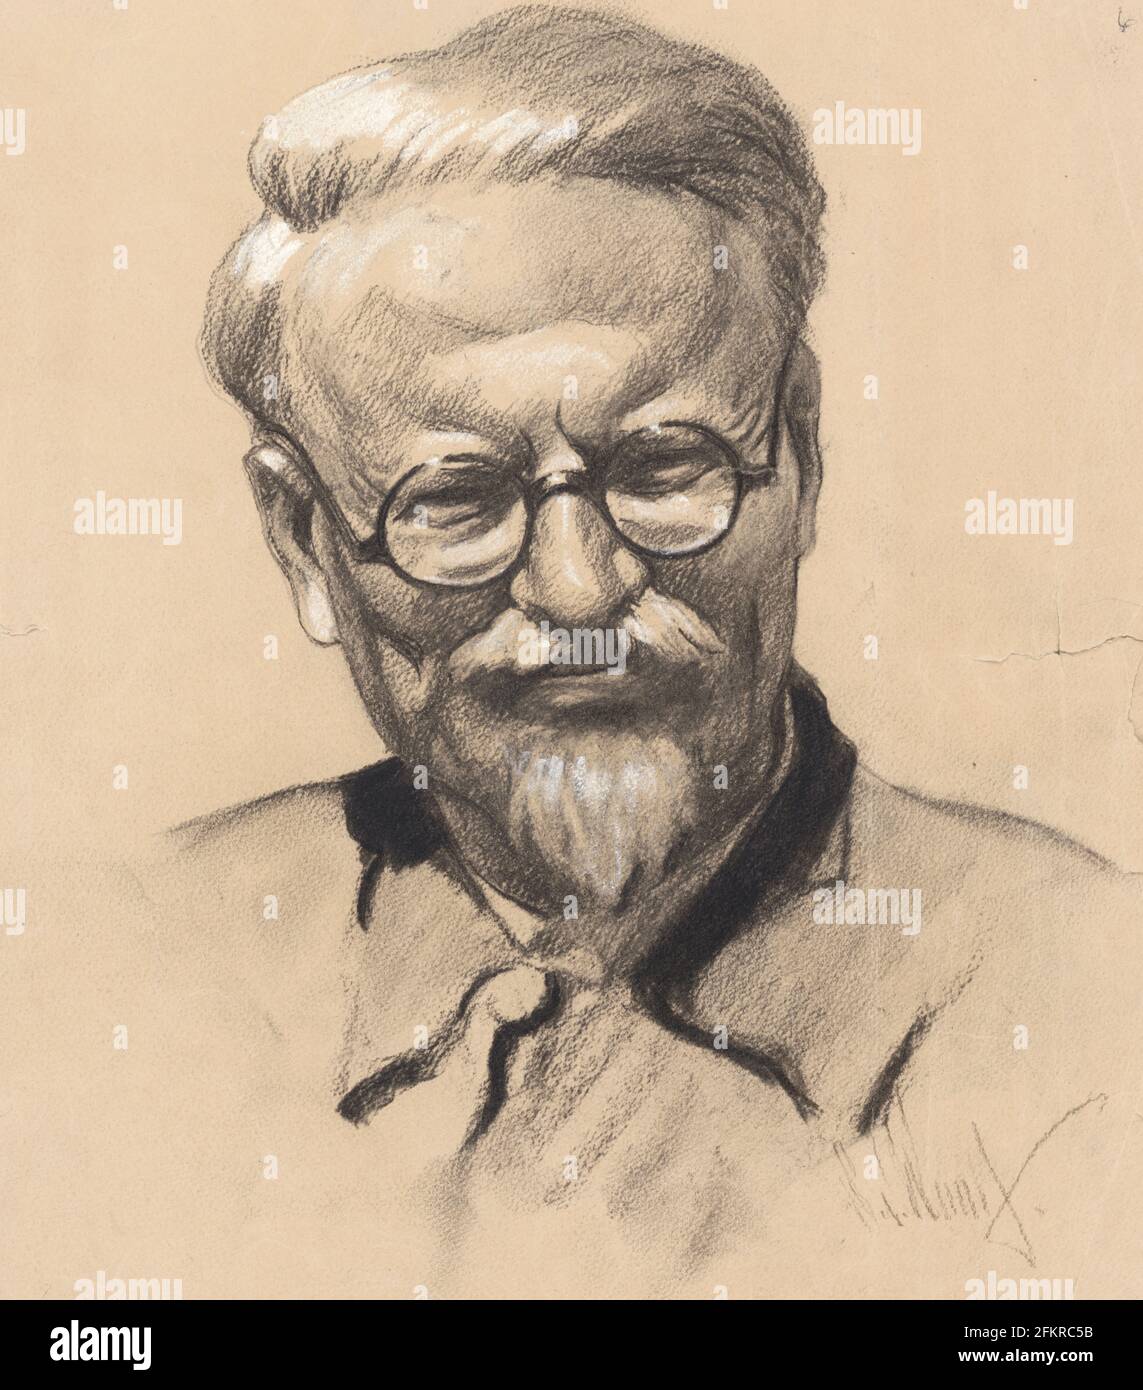 Disegno di carbone e gesso disegno di Leon Trotsky di Samuel Johnson Woolf. Questa immagine è apparsa sulla copertina della rivista TIME, 25 gennaio 1937 Foto Stock